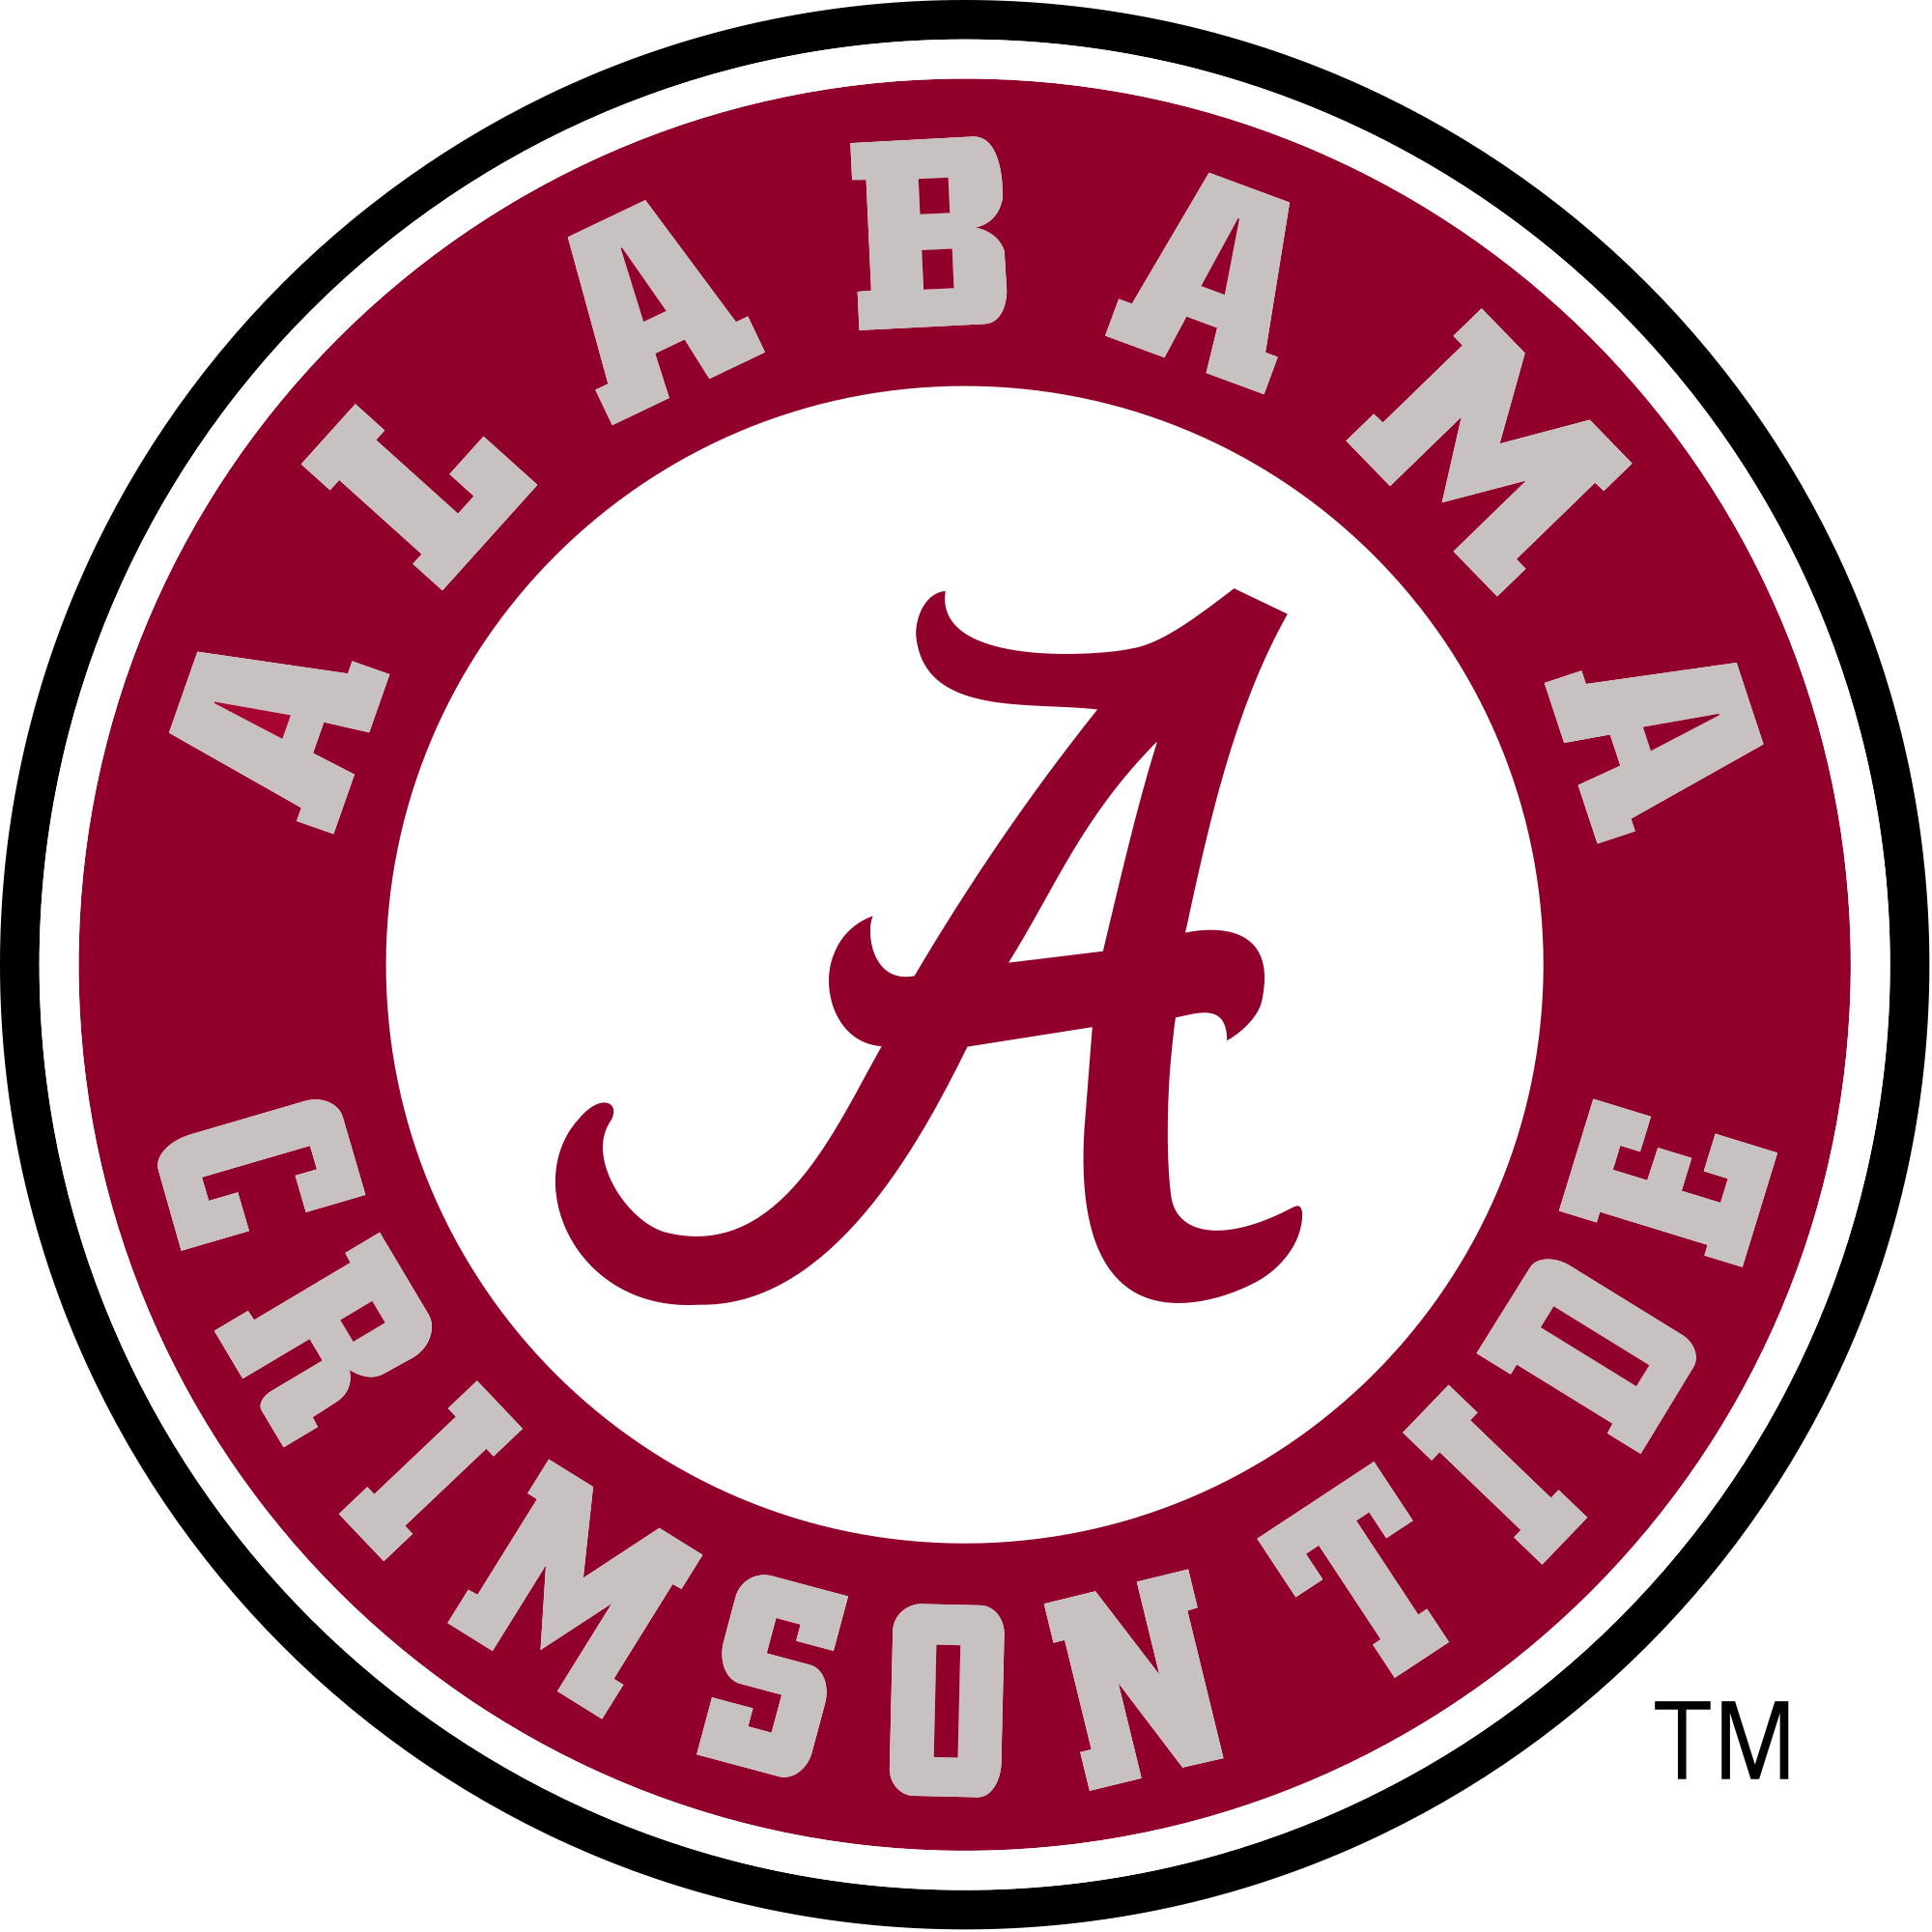 Alabama Crimson Tide - Wikipedia, the free encyclopedia